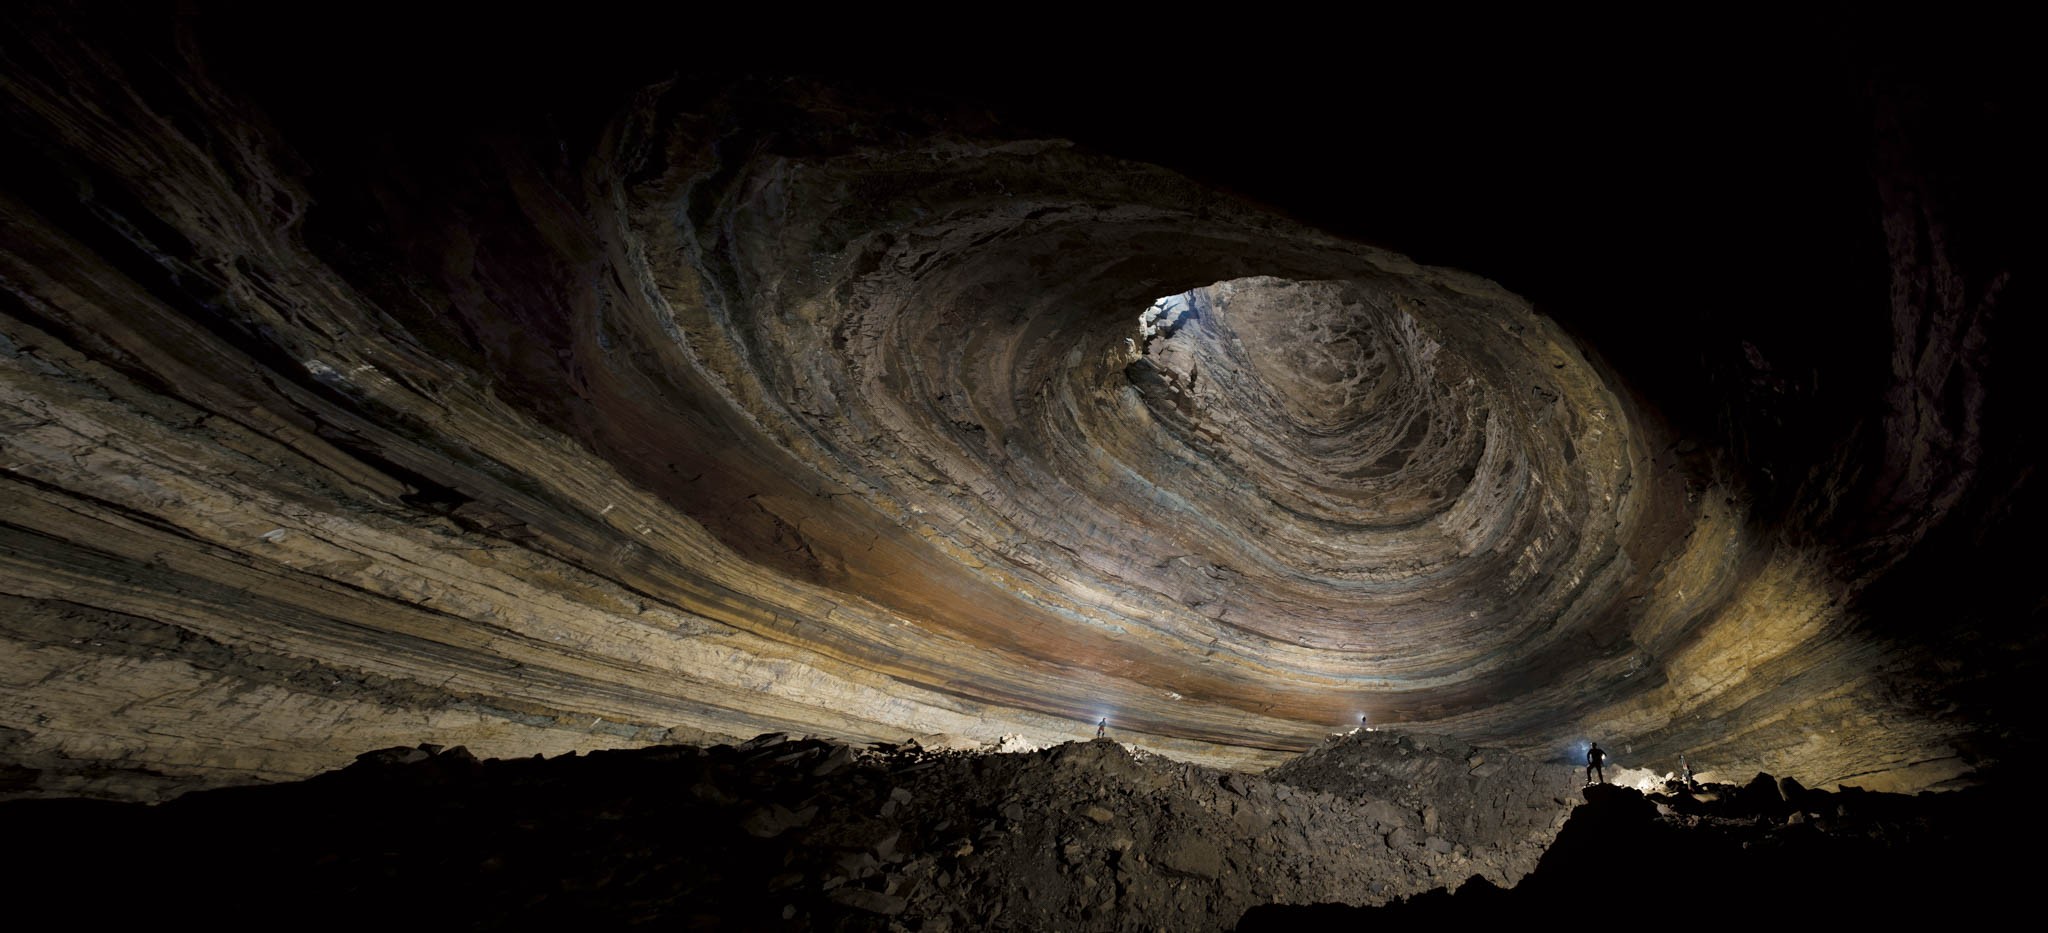 Известняковая пещера в Рамблинг-Фолс, Теннесси. Фотограф Стивен Альварес